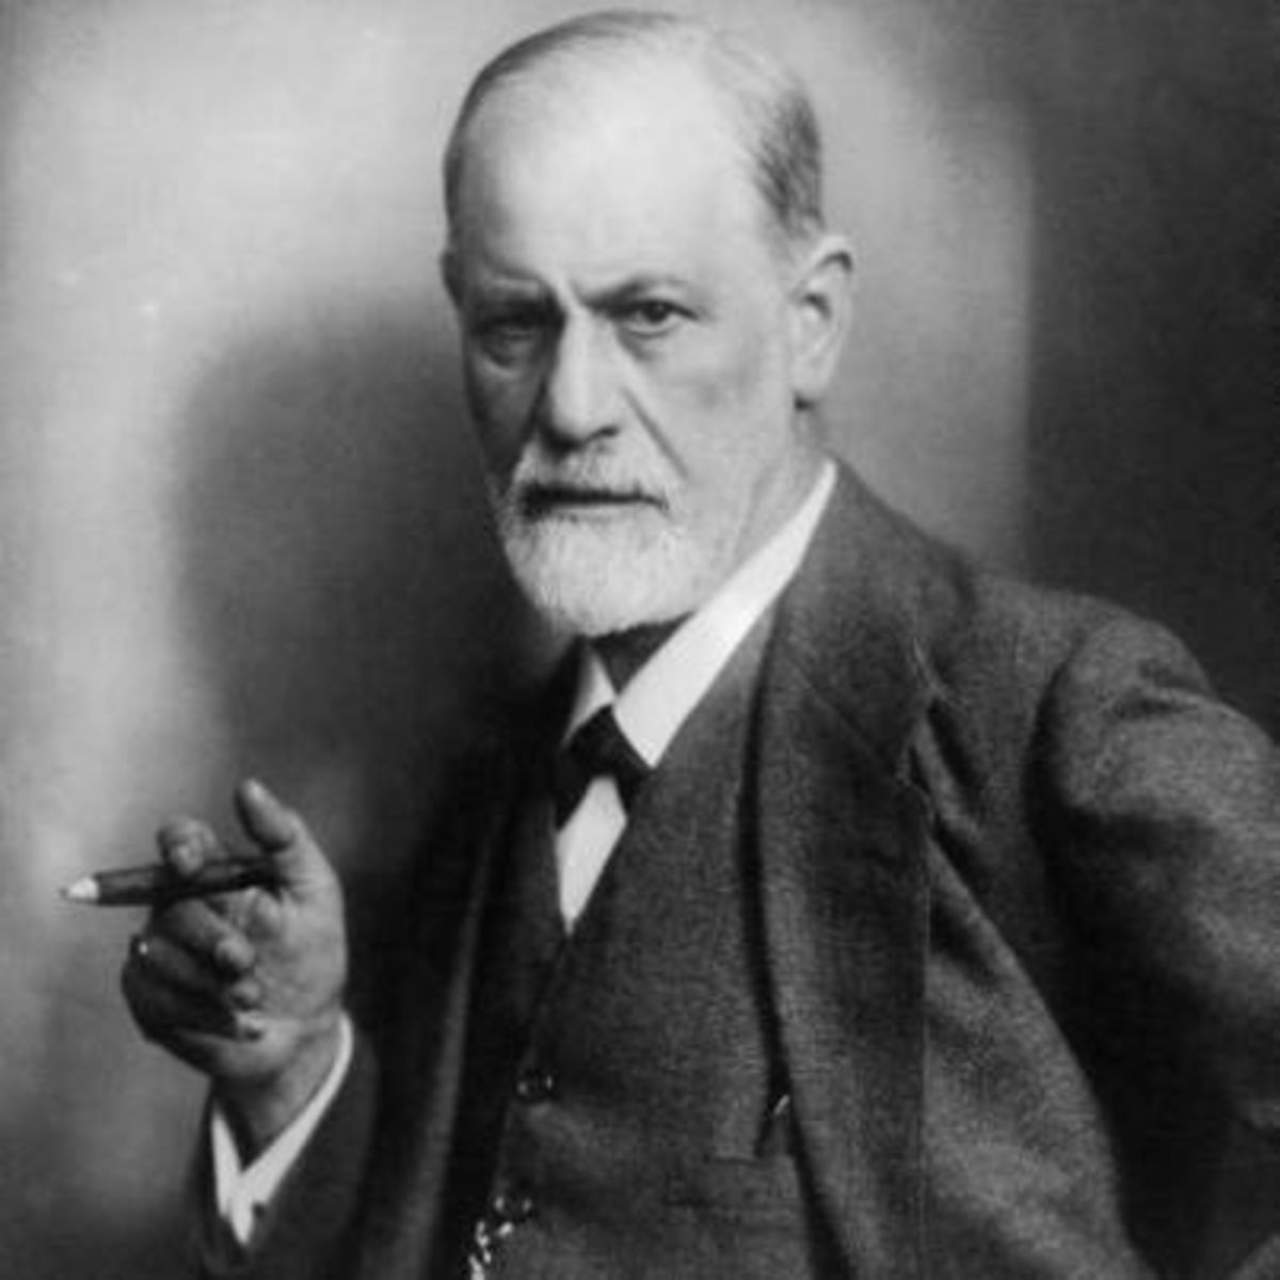 Durante diez años, Freud estuvo muy interesado en la hipnosis y la utilizó en su consulta, práctica que reflejó en numerosos escritos. (ESPECIAL)